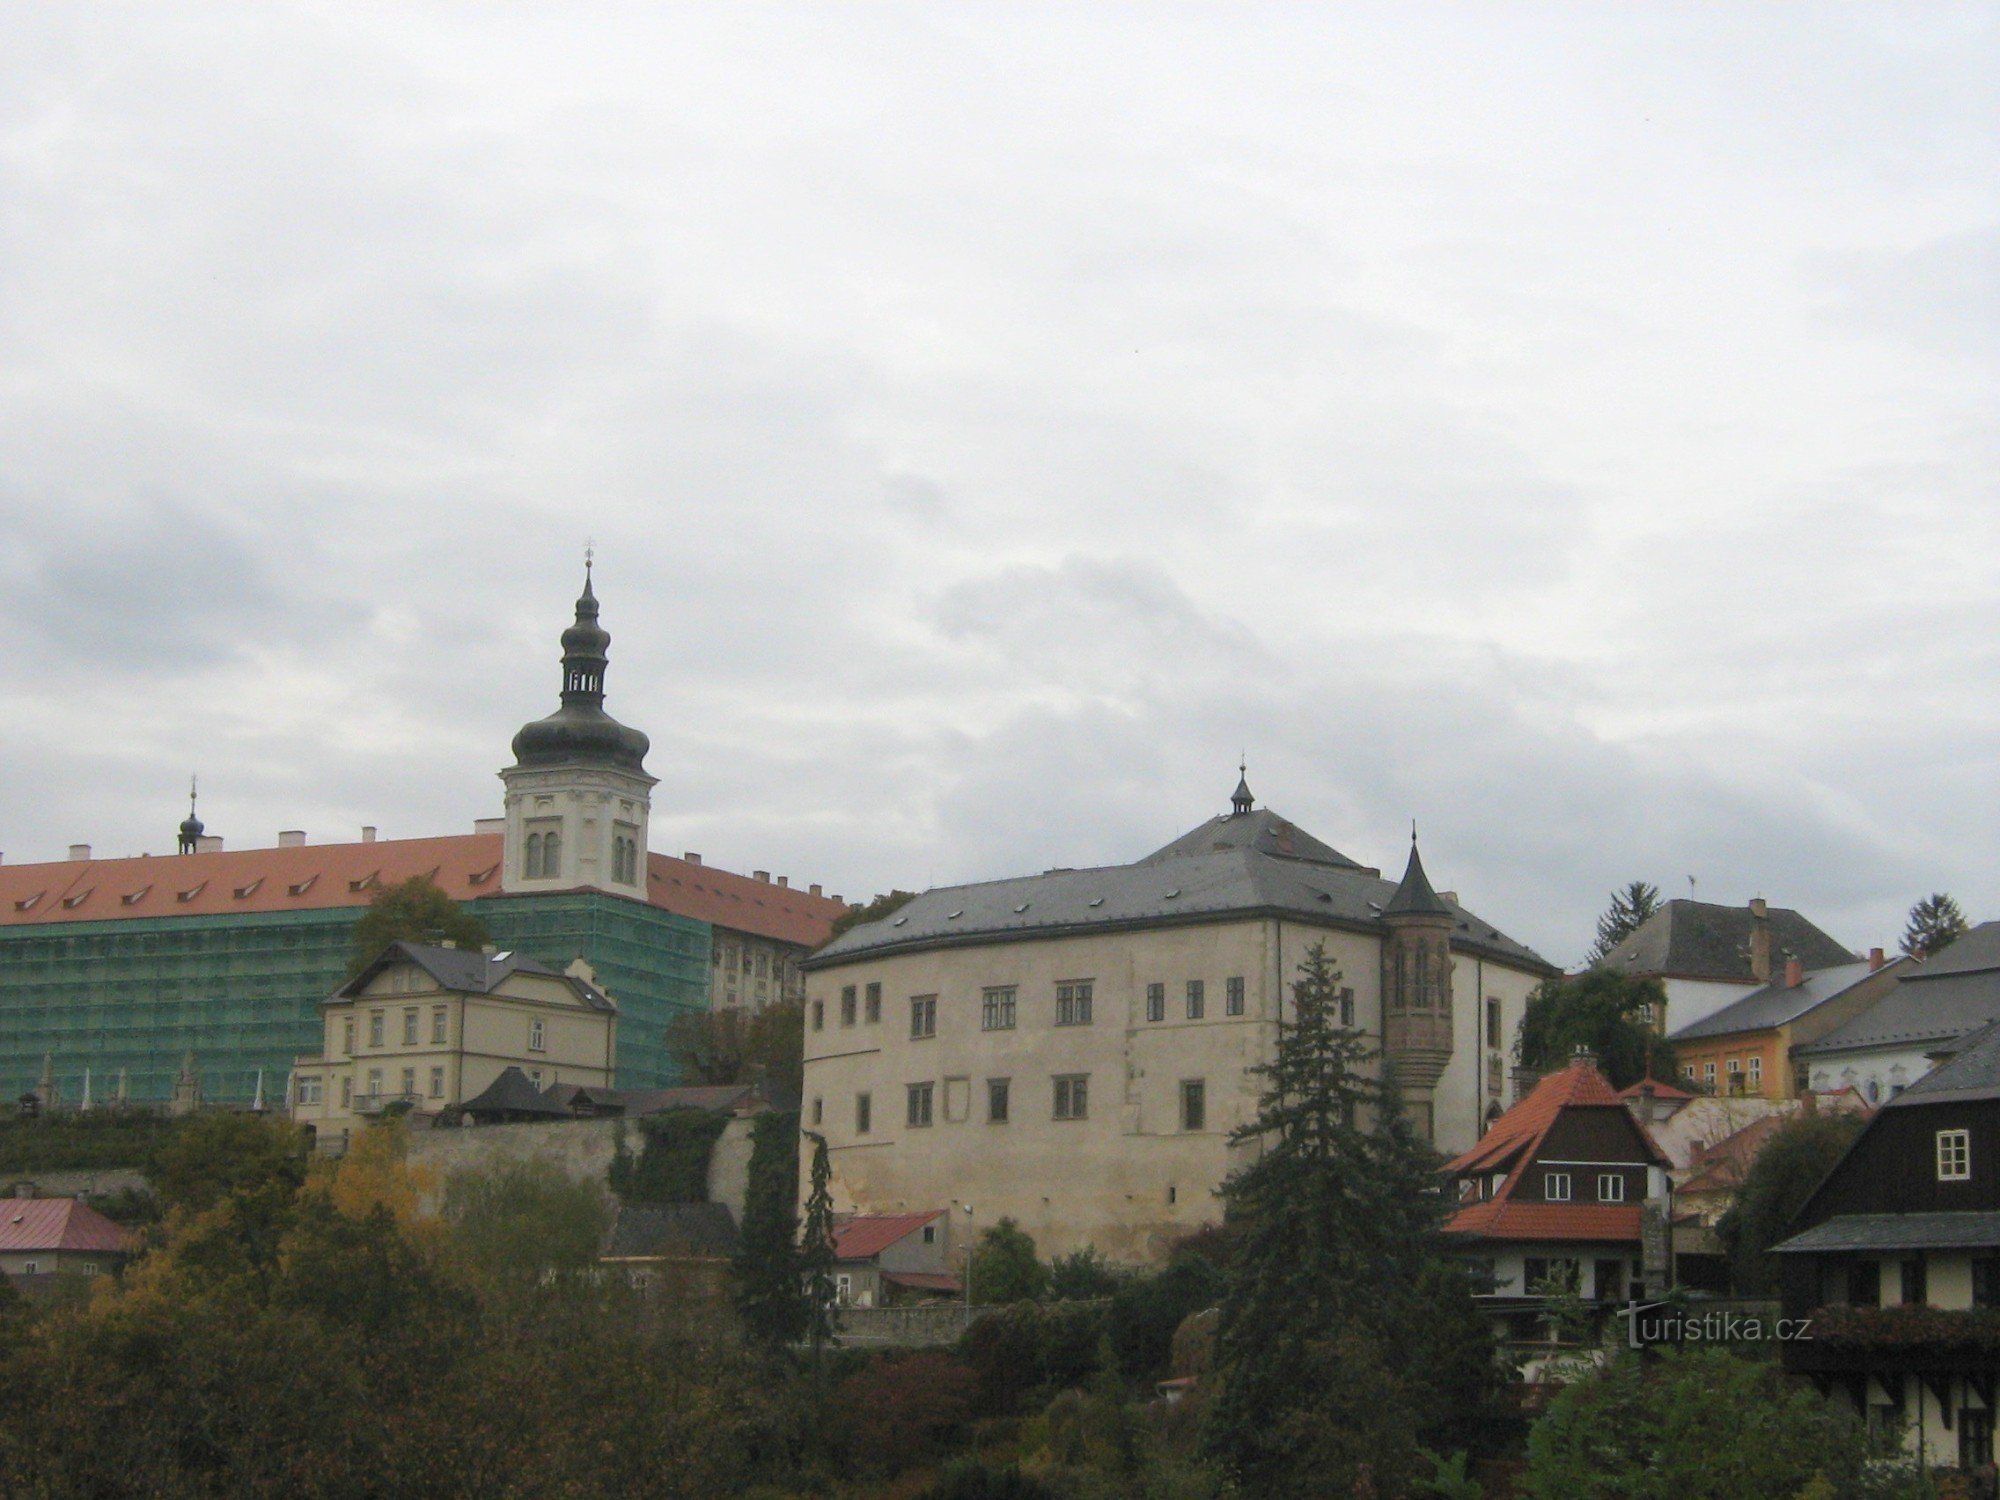 Hrádek 和耶稣会学院的视图